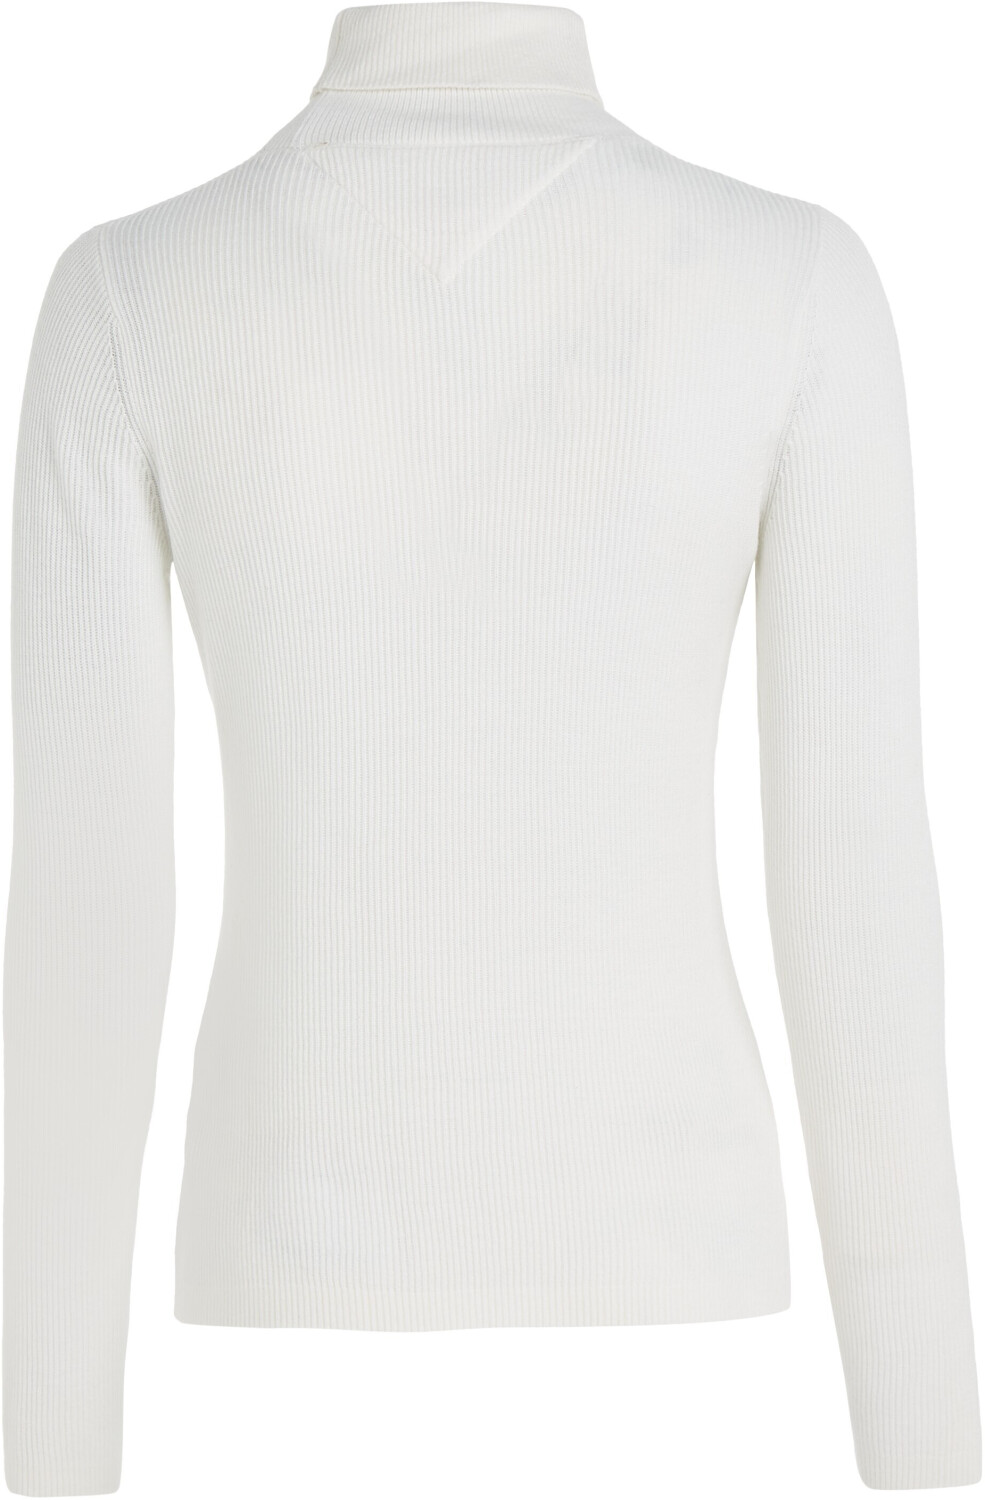 ab white Tommy | Hilfiger Essential Sweater € ancient bei (DW0DW16537) 59,99 Preisvergleich Turtleneck